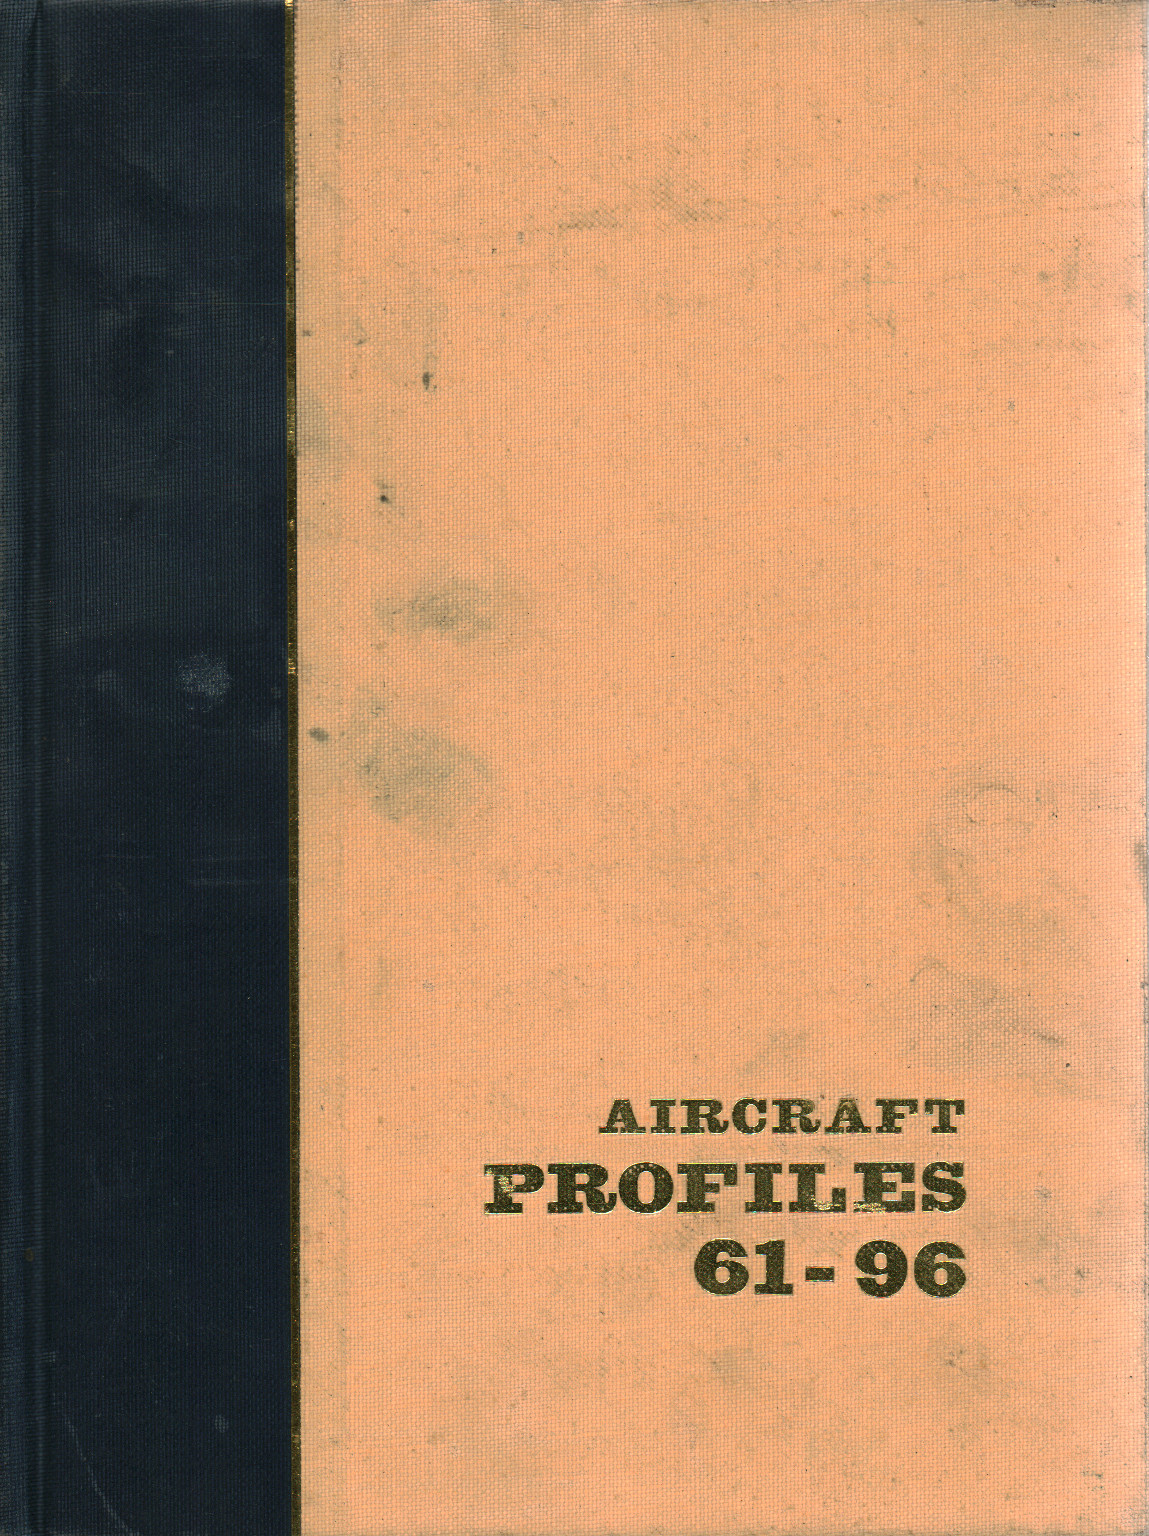 Aviones de perfiles Núms. 61-96, s.una.